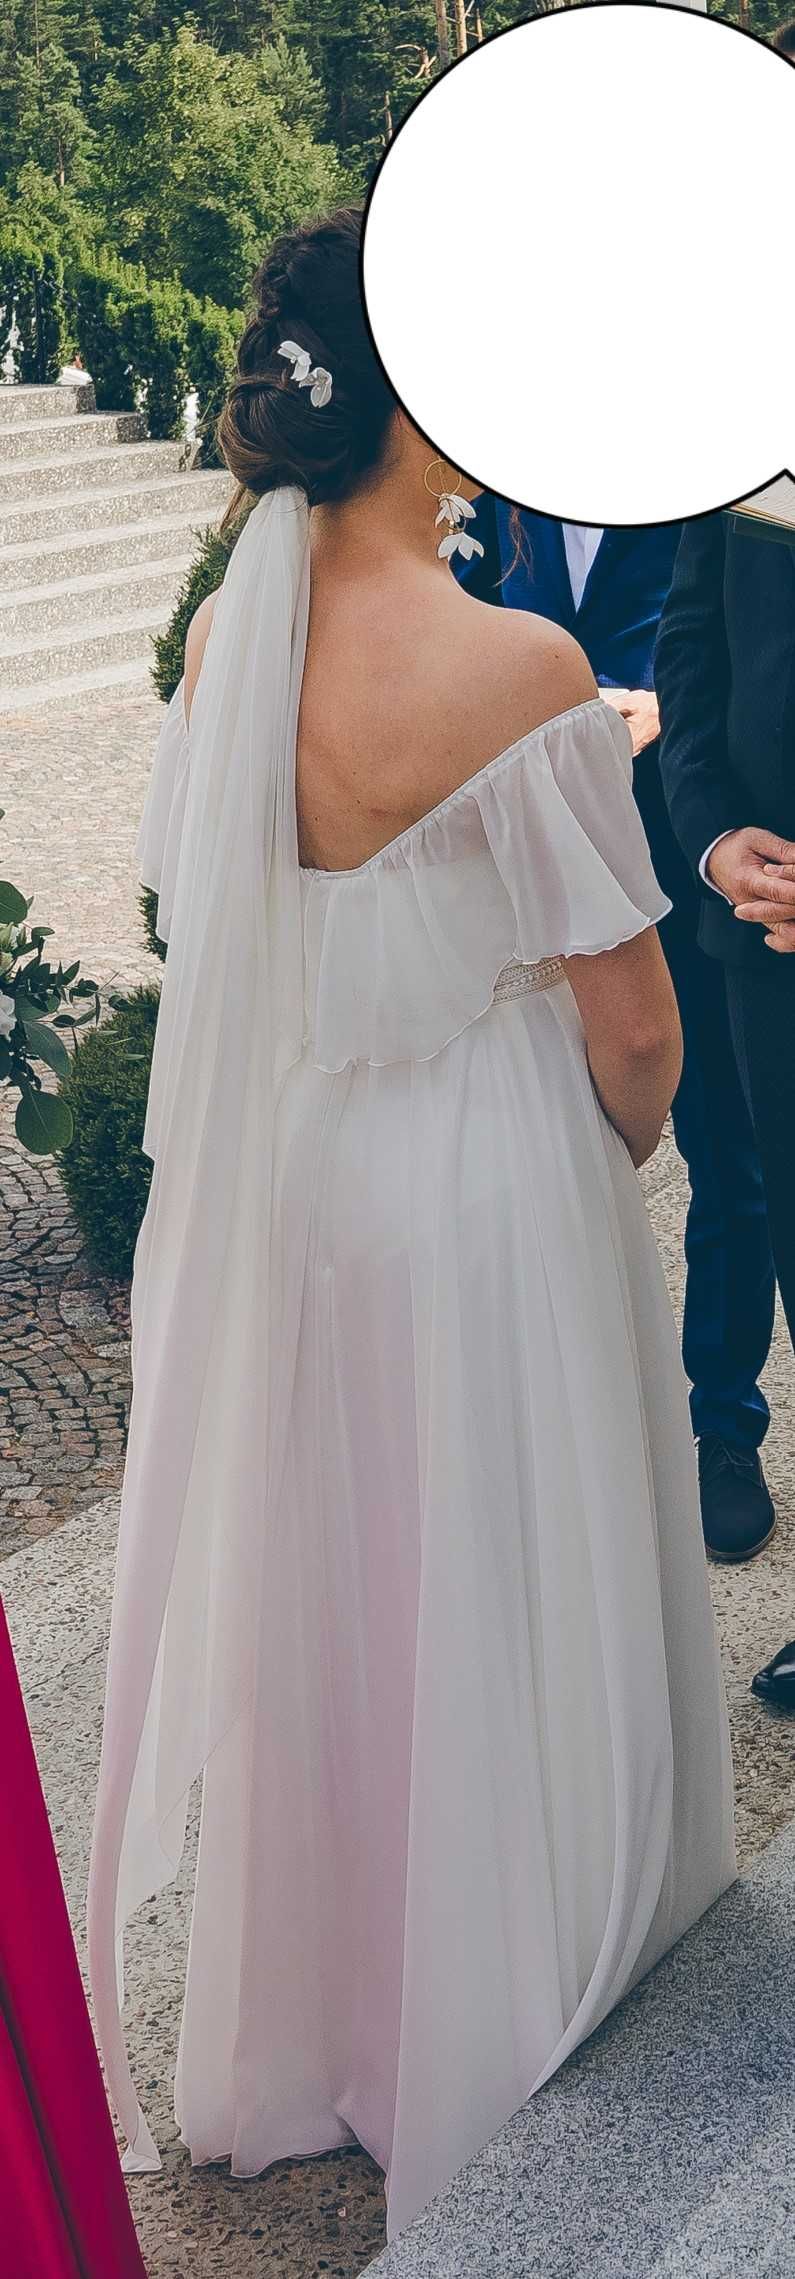 Suknia ślubna boho minimalistyczna 38, 40, prosta muślin, rustykalna